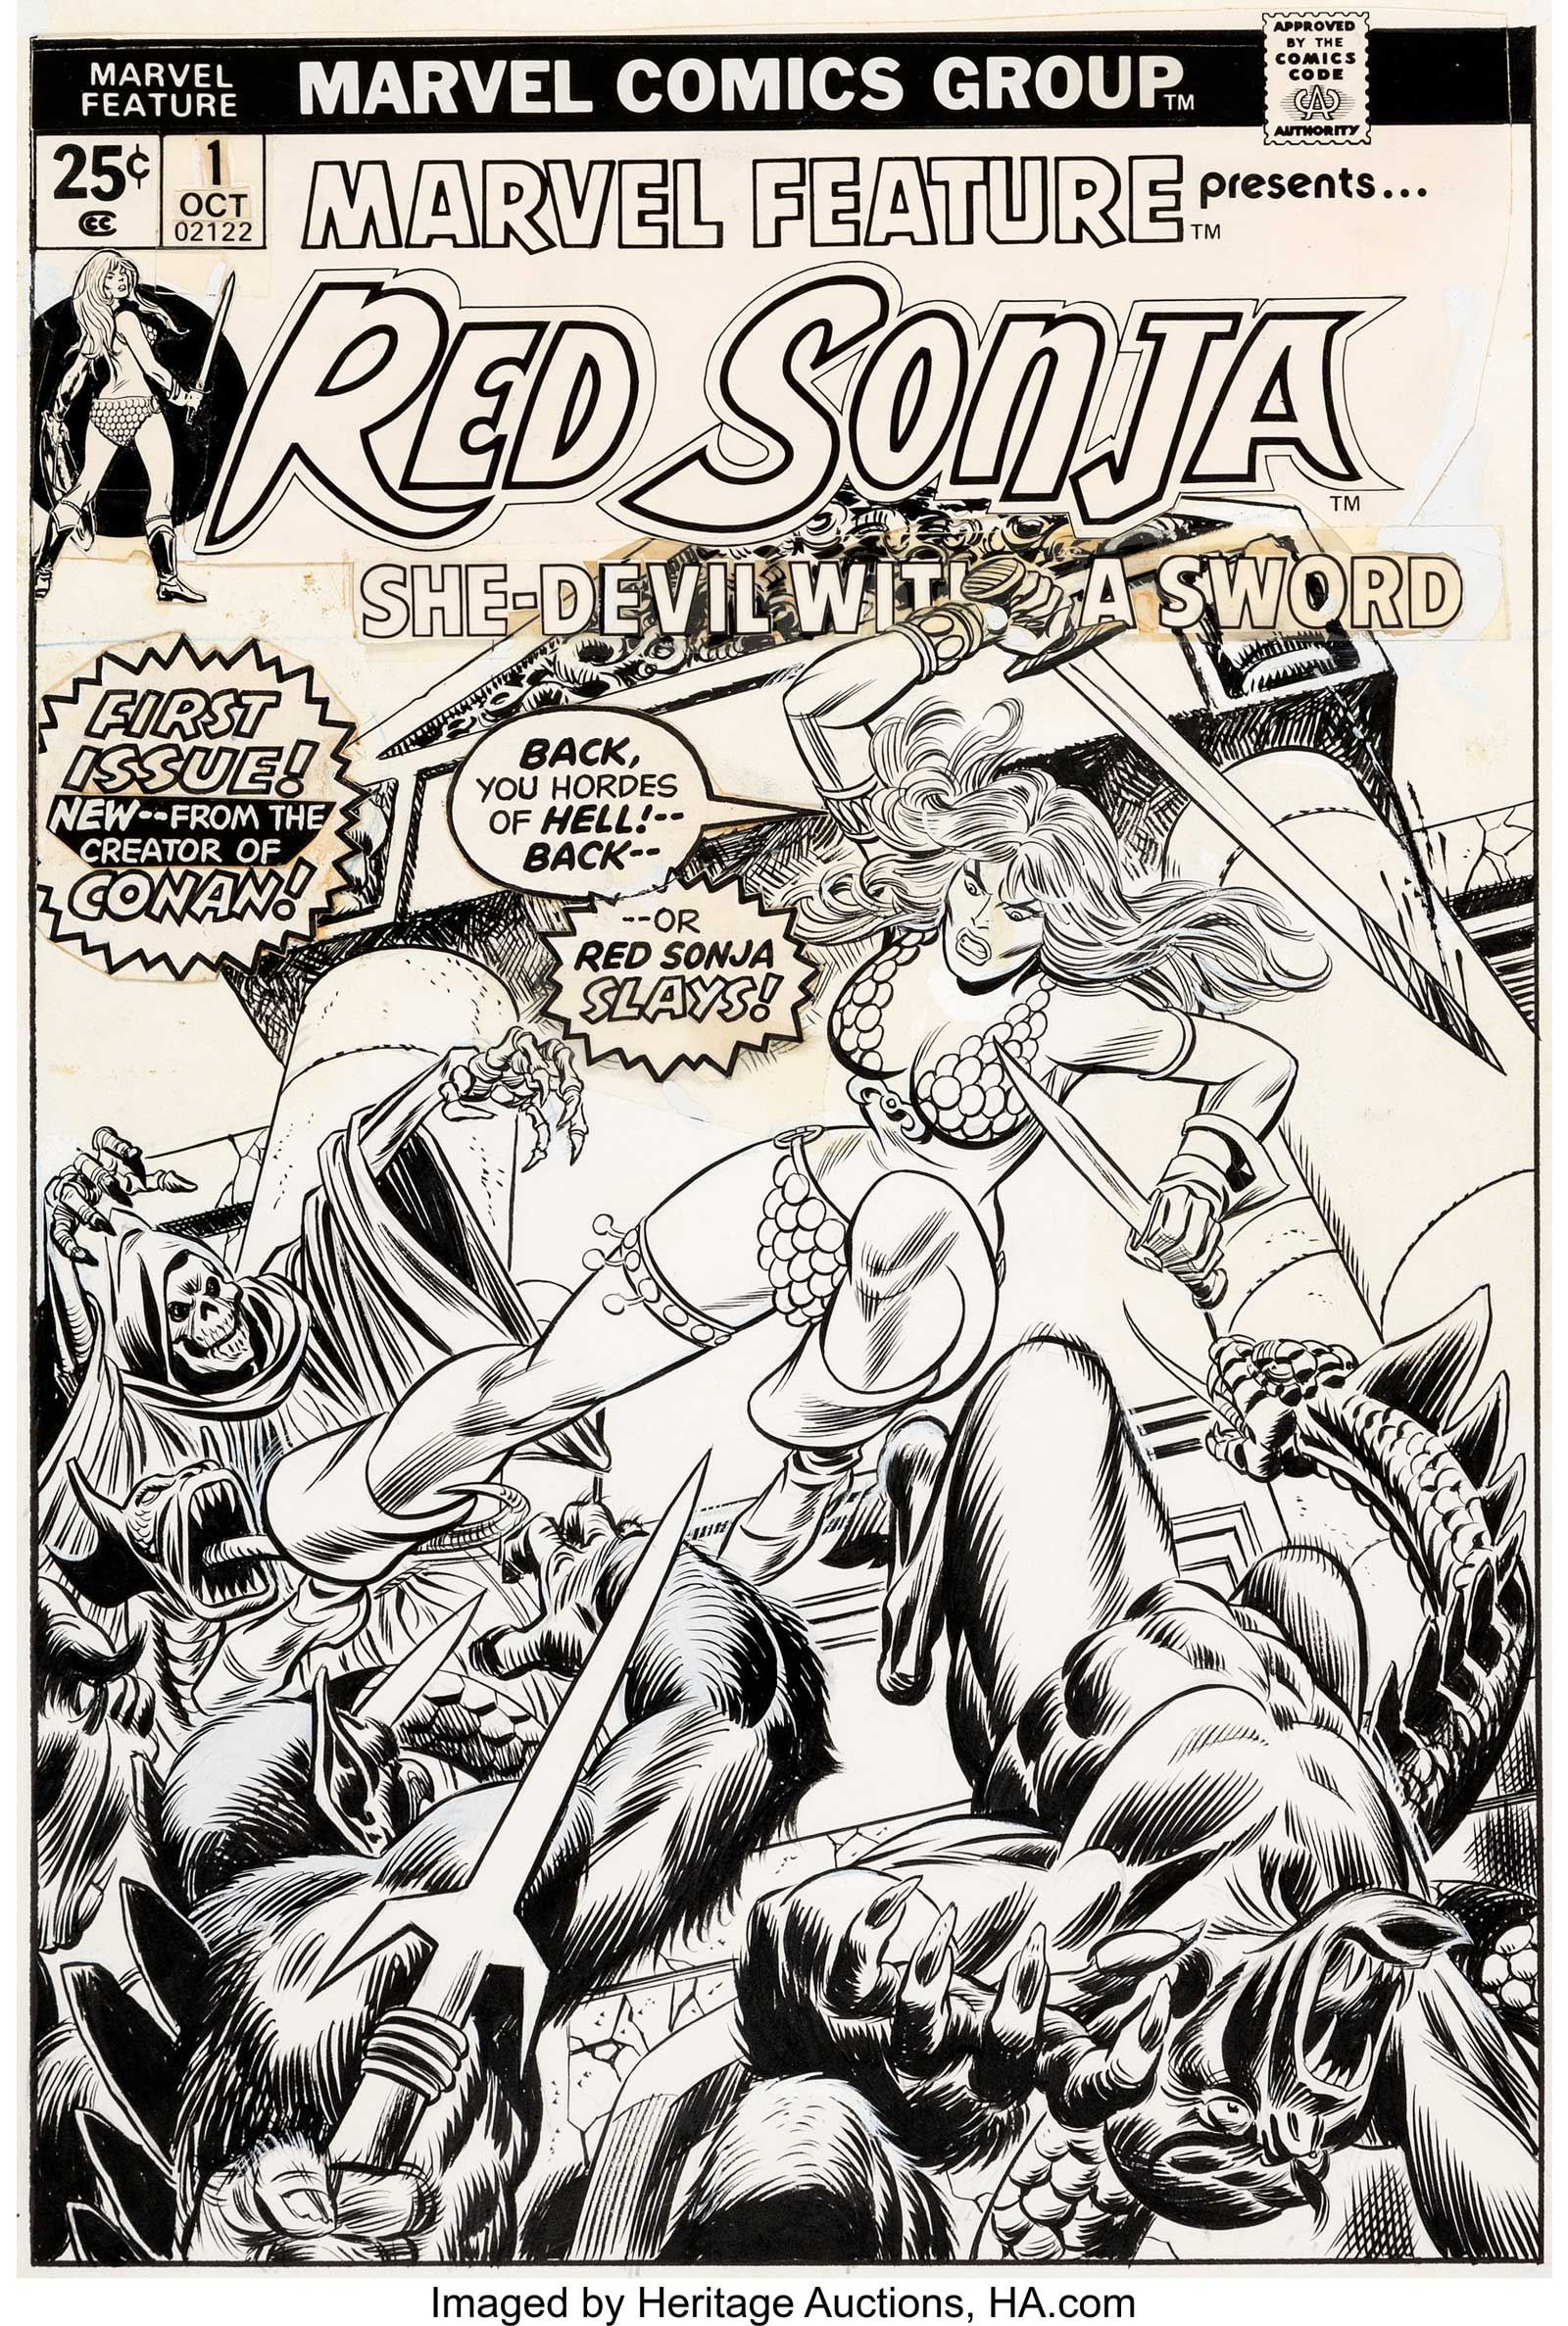 Marvel Feature V2 #1 Cover Red Sonja Original Art by Gil Kane and John Romita Sr. (Marvel, 1975)